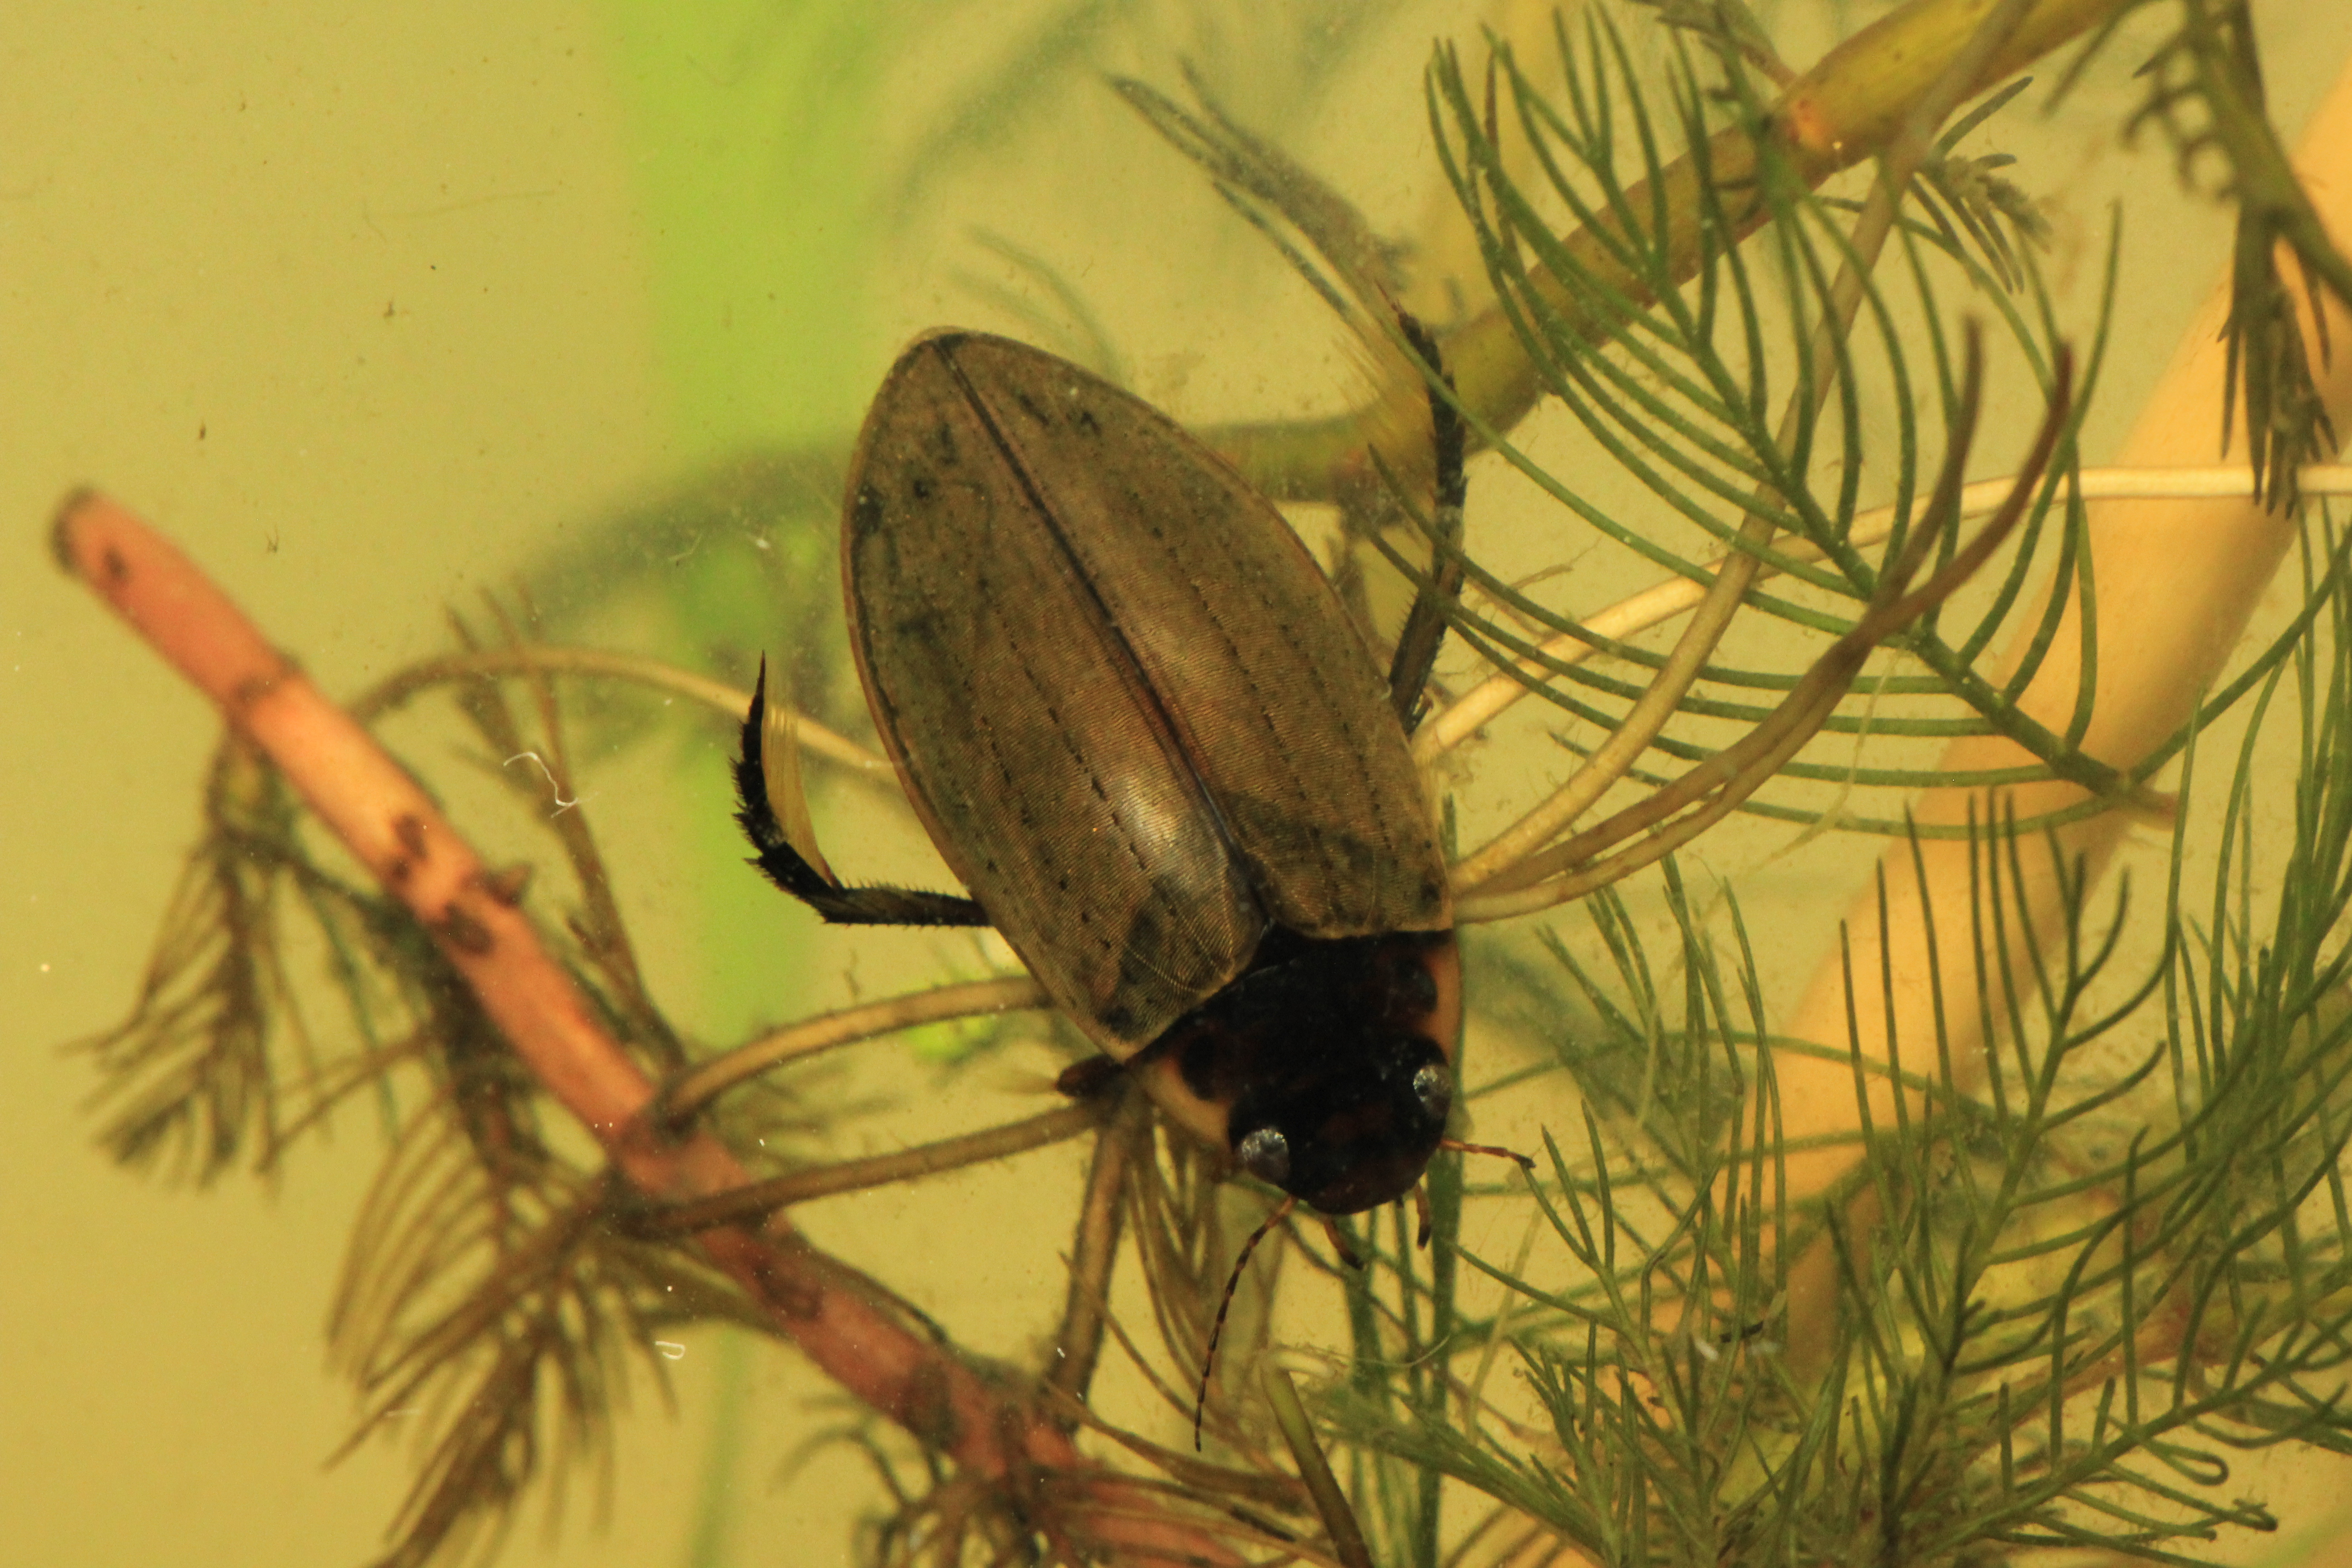   Obr. 3: Potápník Colymbetes fuscus je široce rozšířený po celé ČR, je ovšem nalézán obvykle v rybnících s extenzivním managmentem. Podobný druh C. striatus (CR) byl u nás nalezen pouze na několika lokalitách v nádržích bez ryb s hustou vegetací. Foto V. Kolář